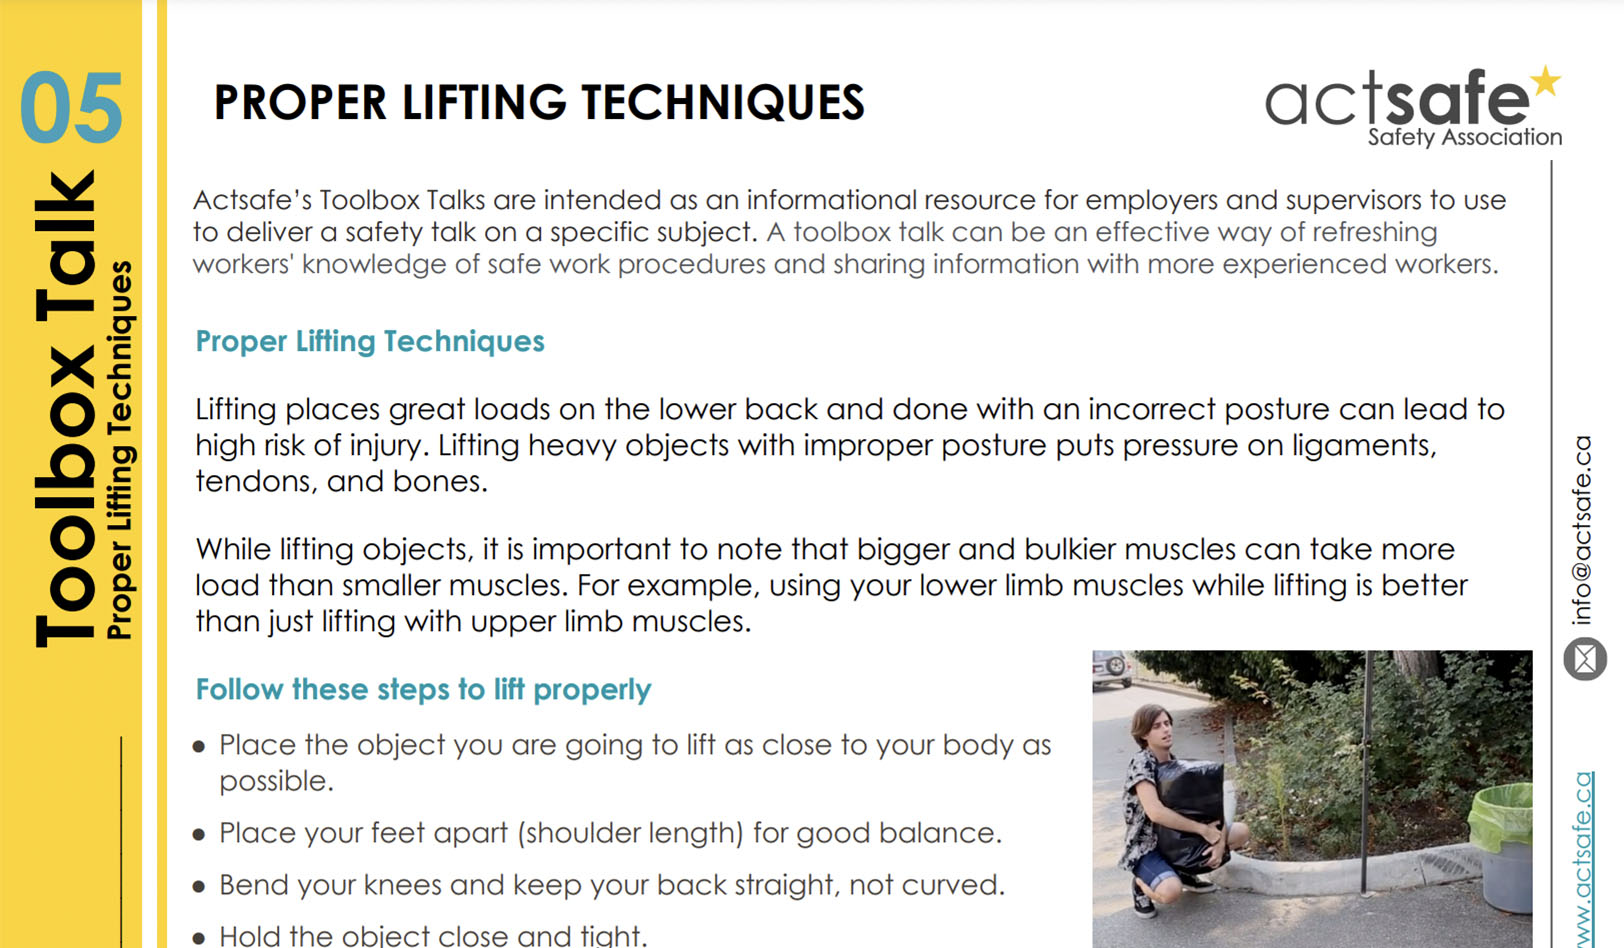 Proper lifting techniques